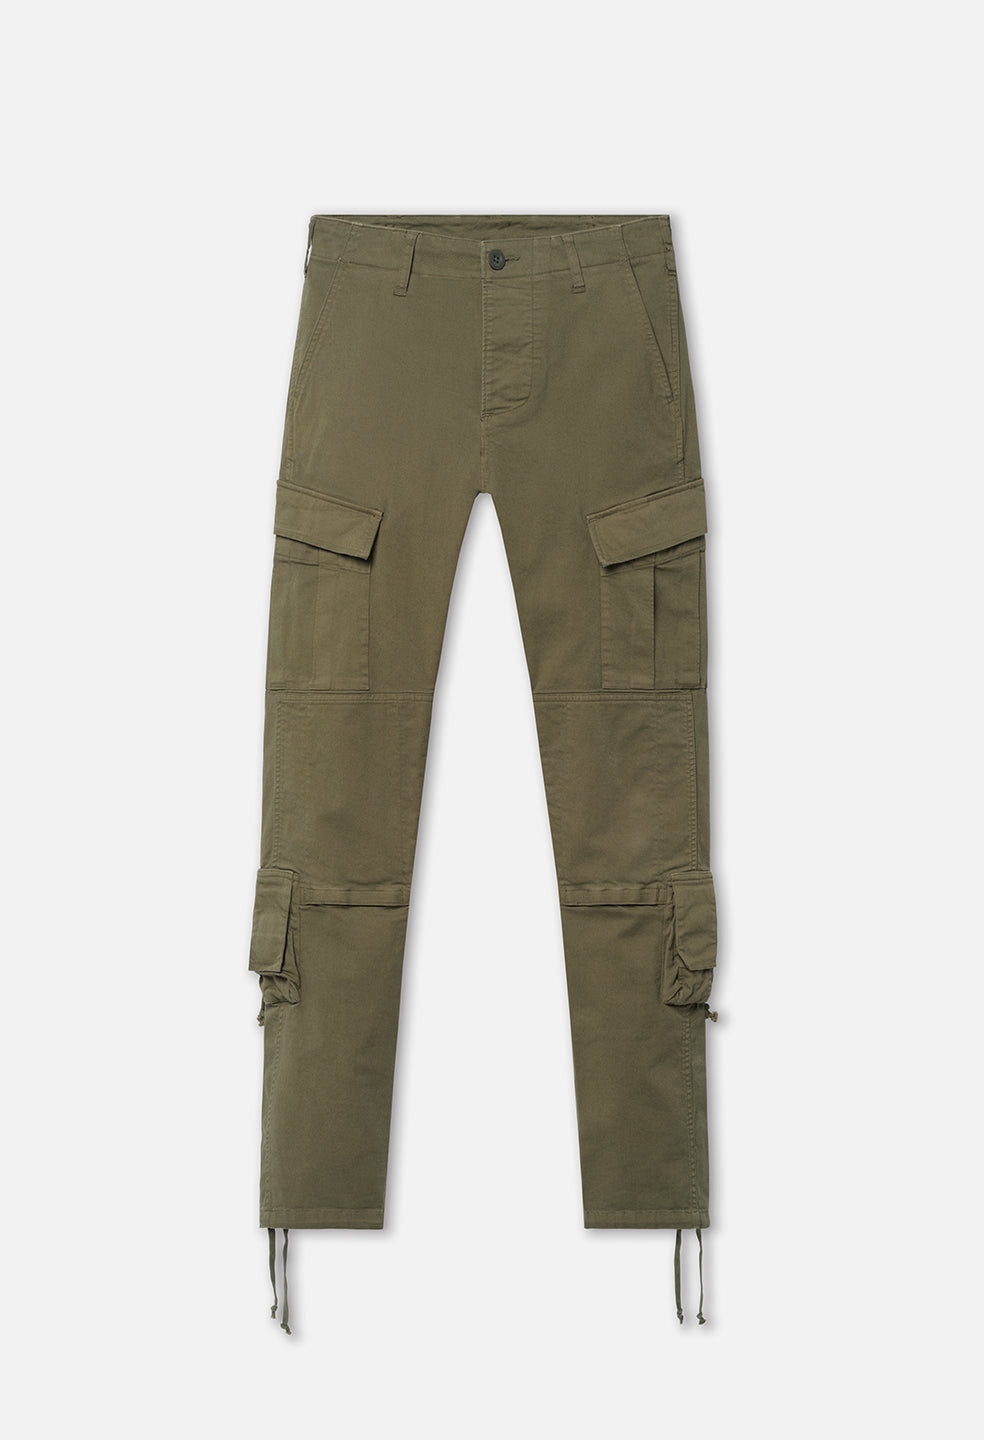 Men's V2 Tactical Pants – First Tactical